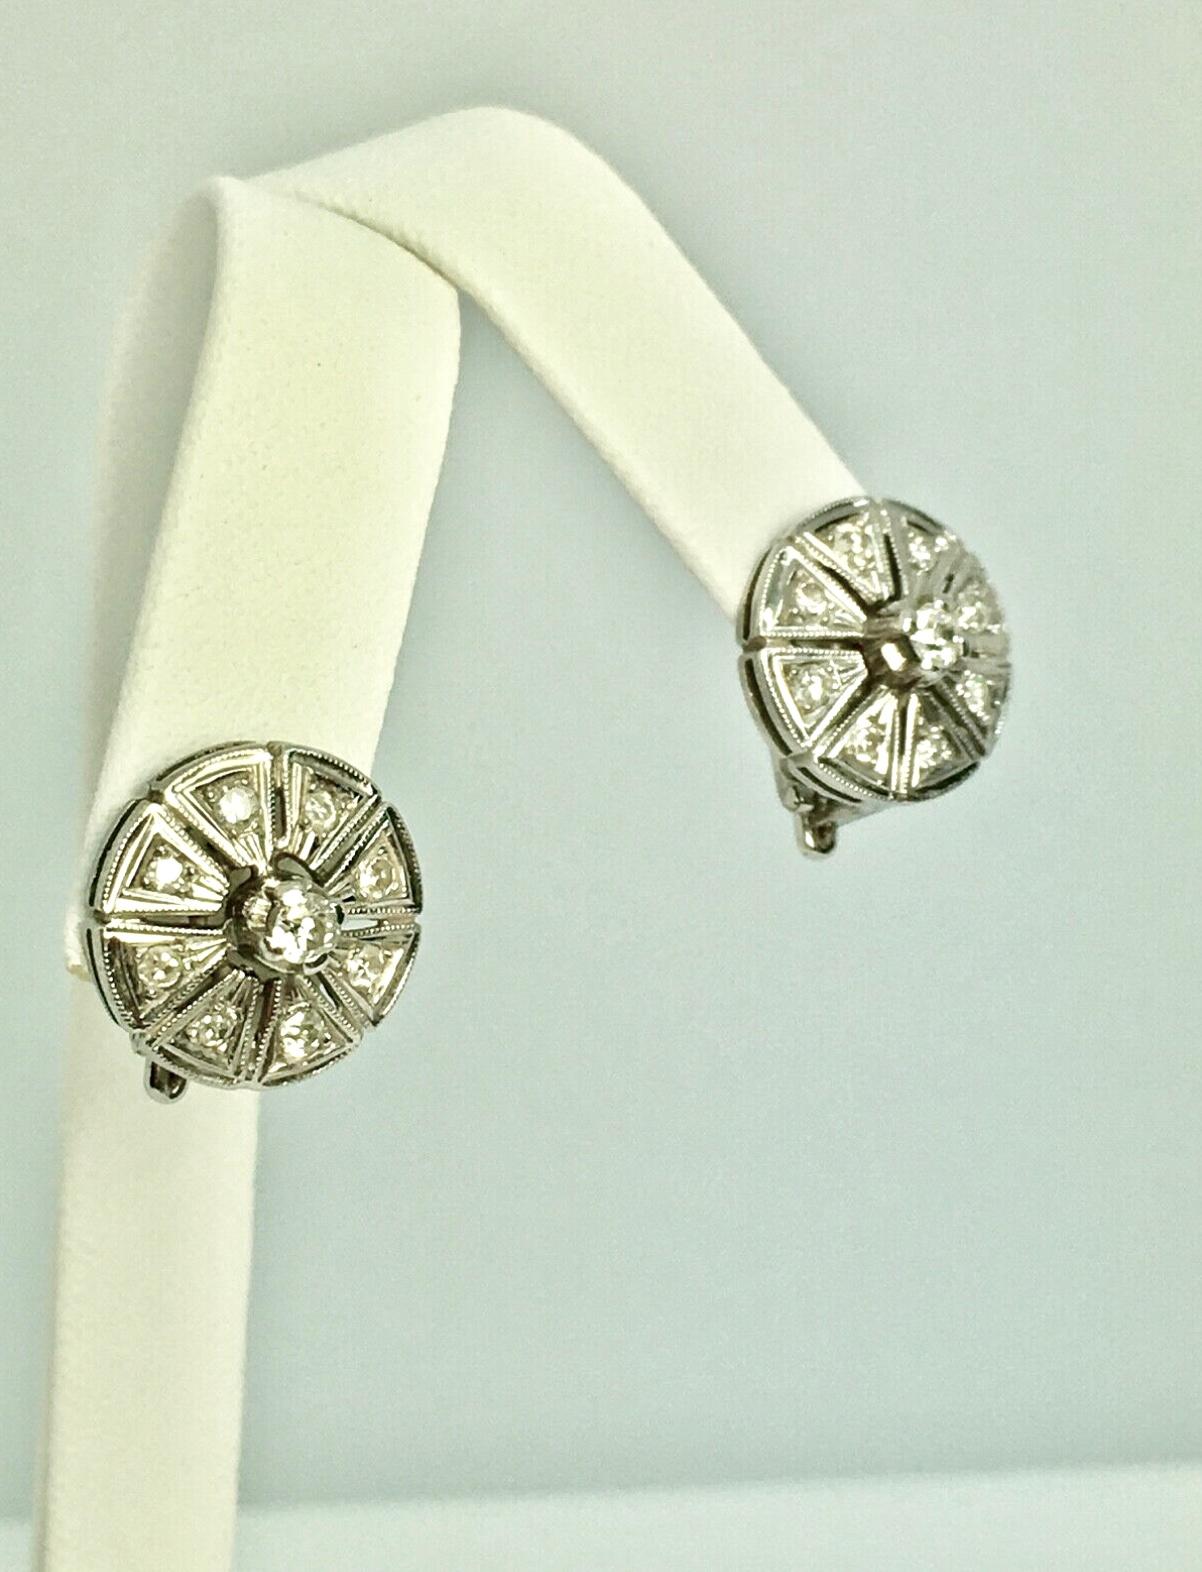 Antique Deco Diamond Earrings Clip-on Earrings 18K White Gold 1